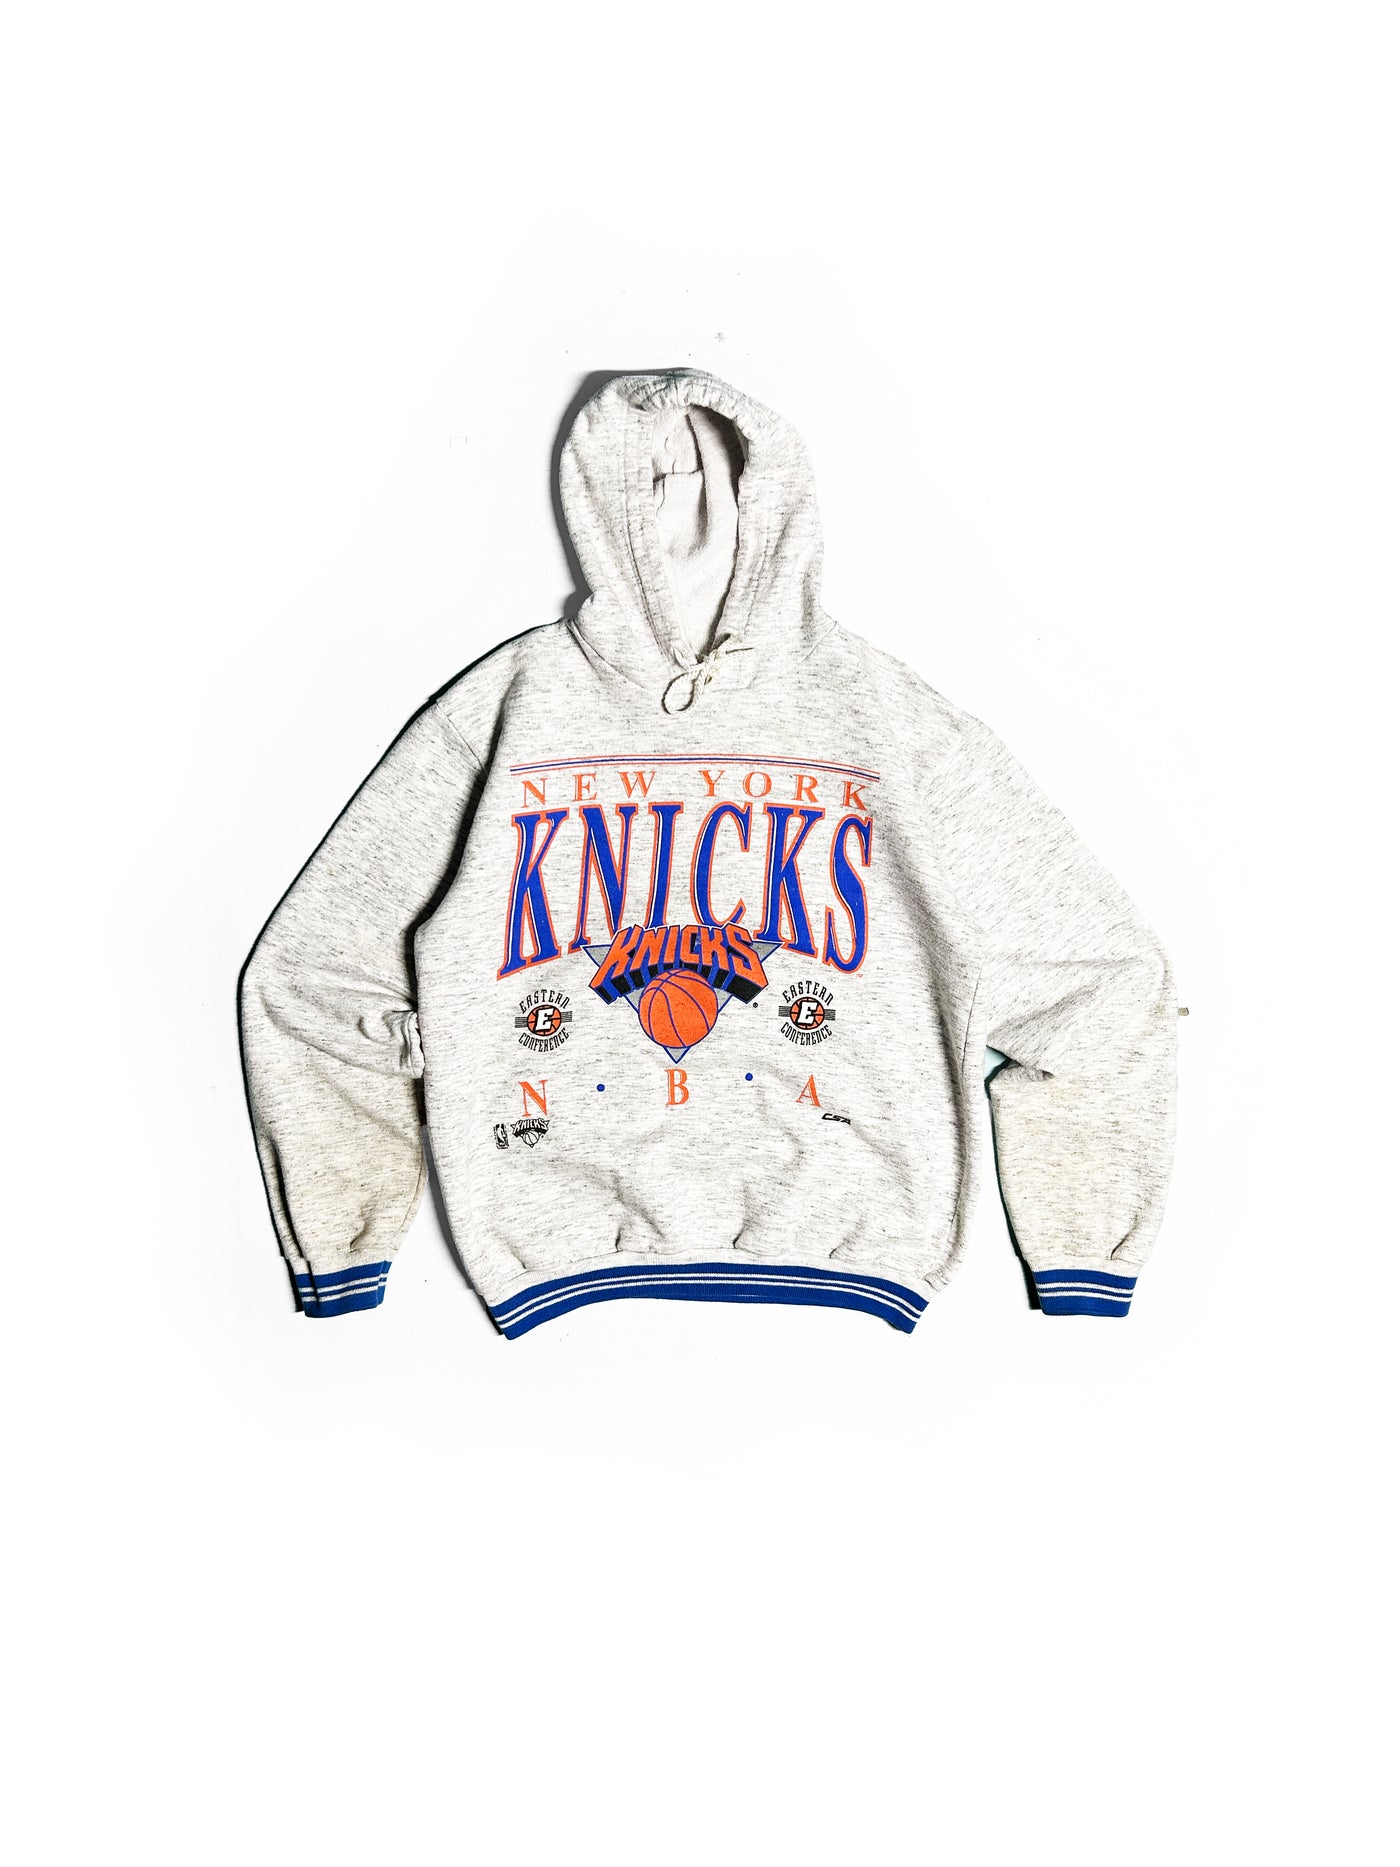 Vintage 90s New York Knicks Hoodie